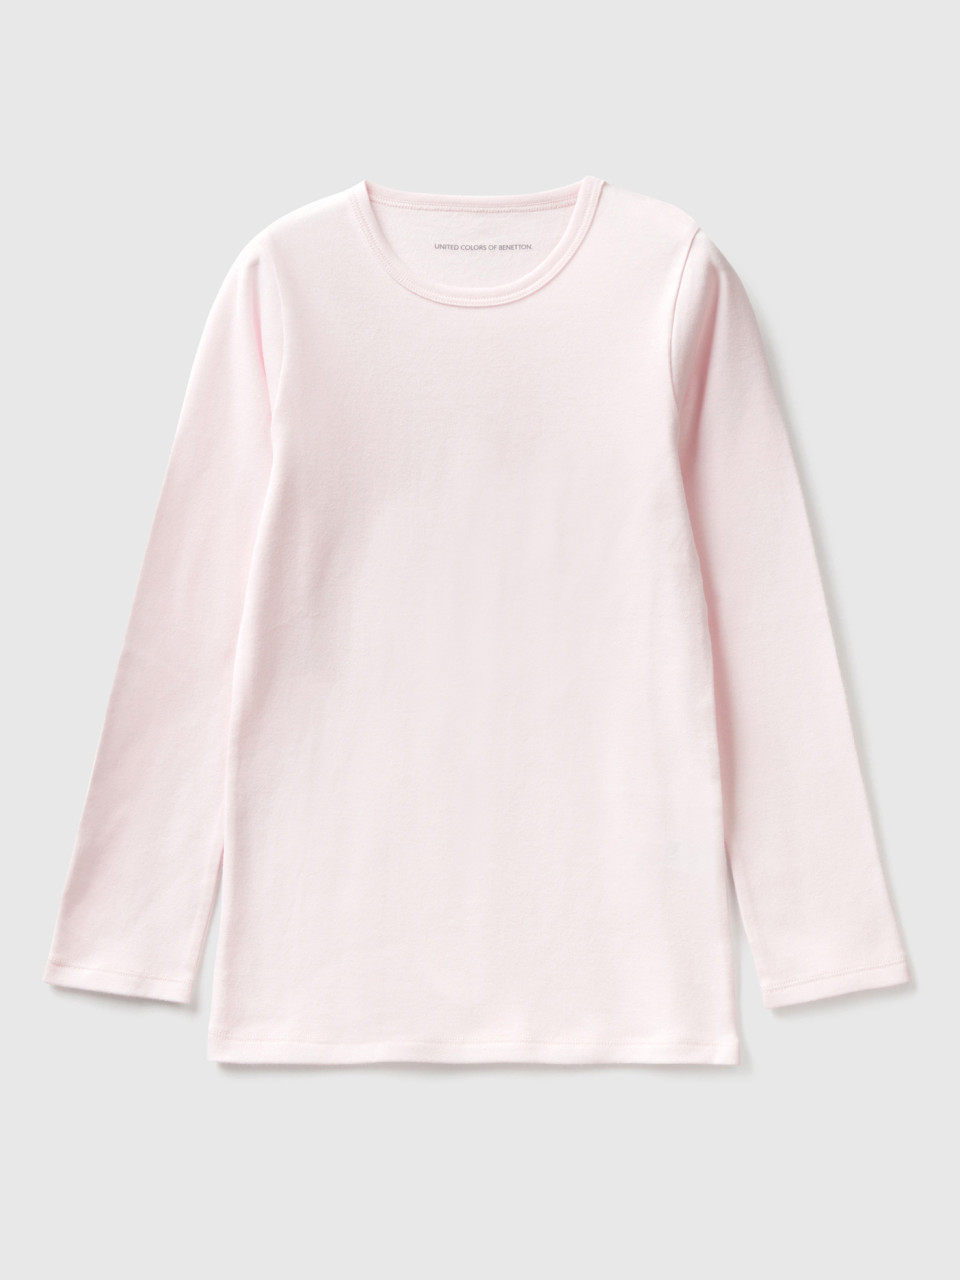 Benetton, T-shirt Manches Longues En Coton Chaud, Rose, Enfants